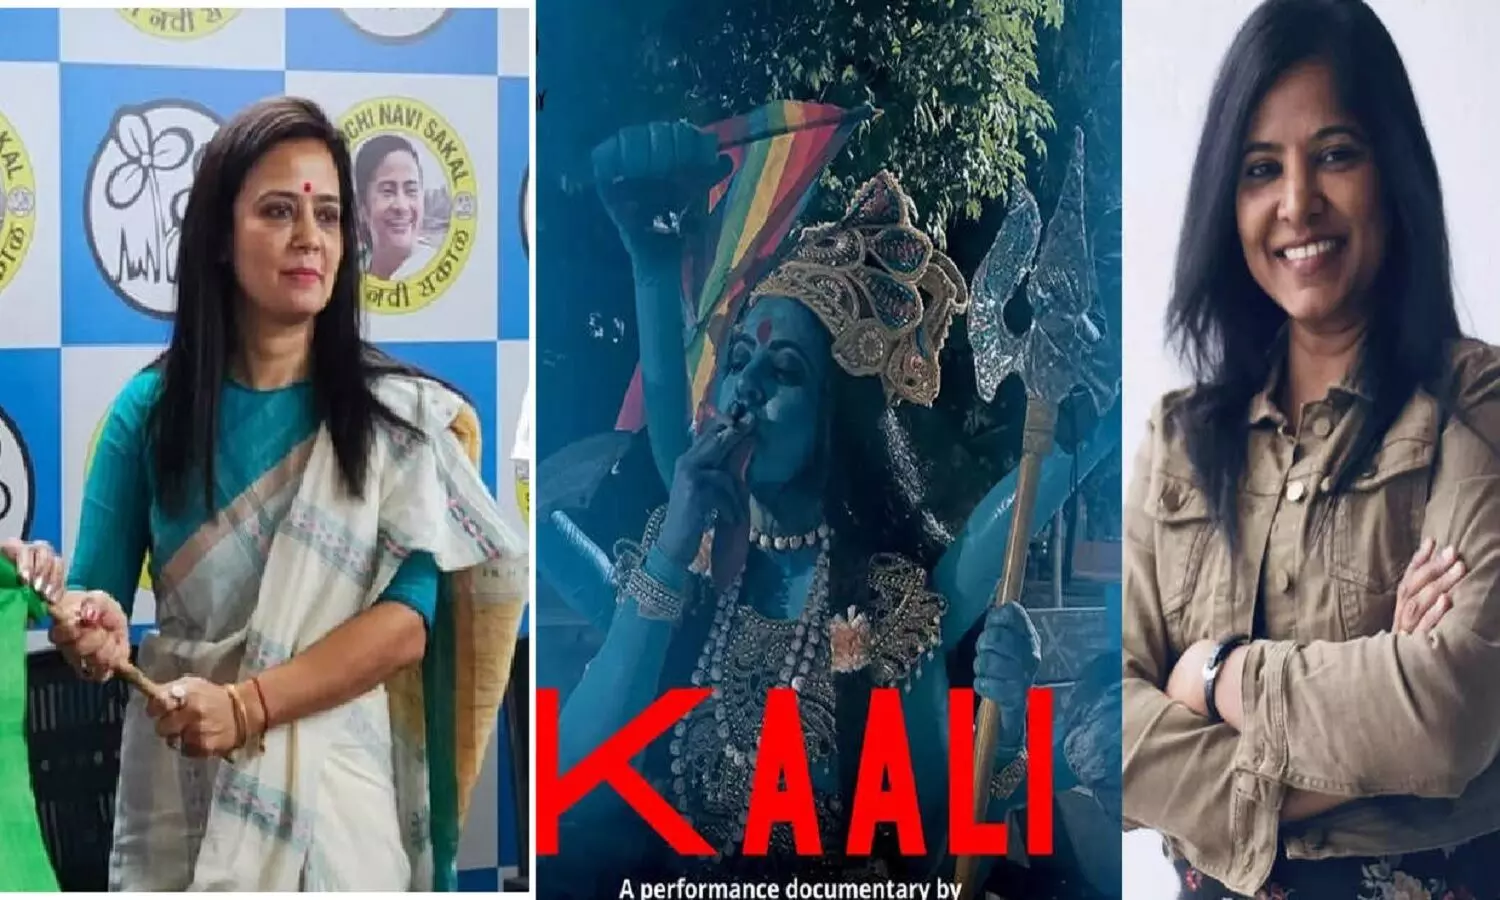 Kaali Poster Controversy: TMC सांसद महुआ मोइत्री ने कहा- मेरे लिए काली, मांस भक्षी, शराब पीने वाली देवी